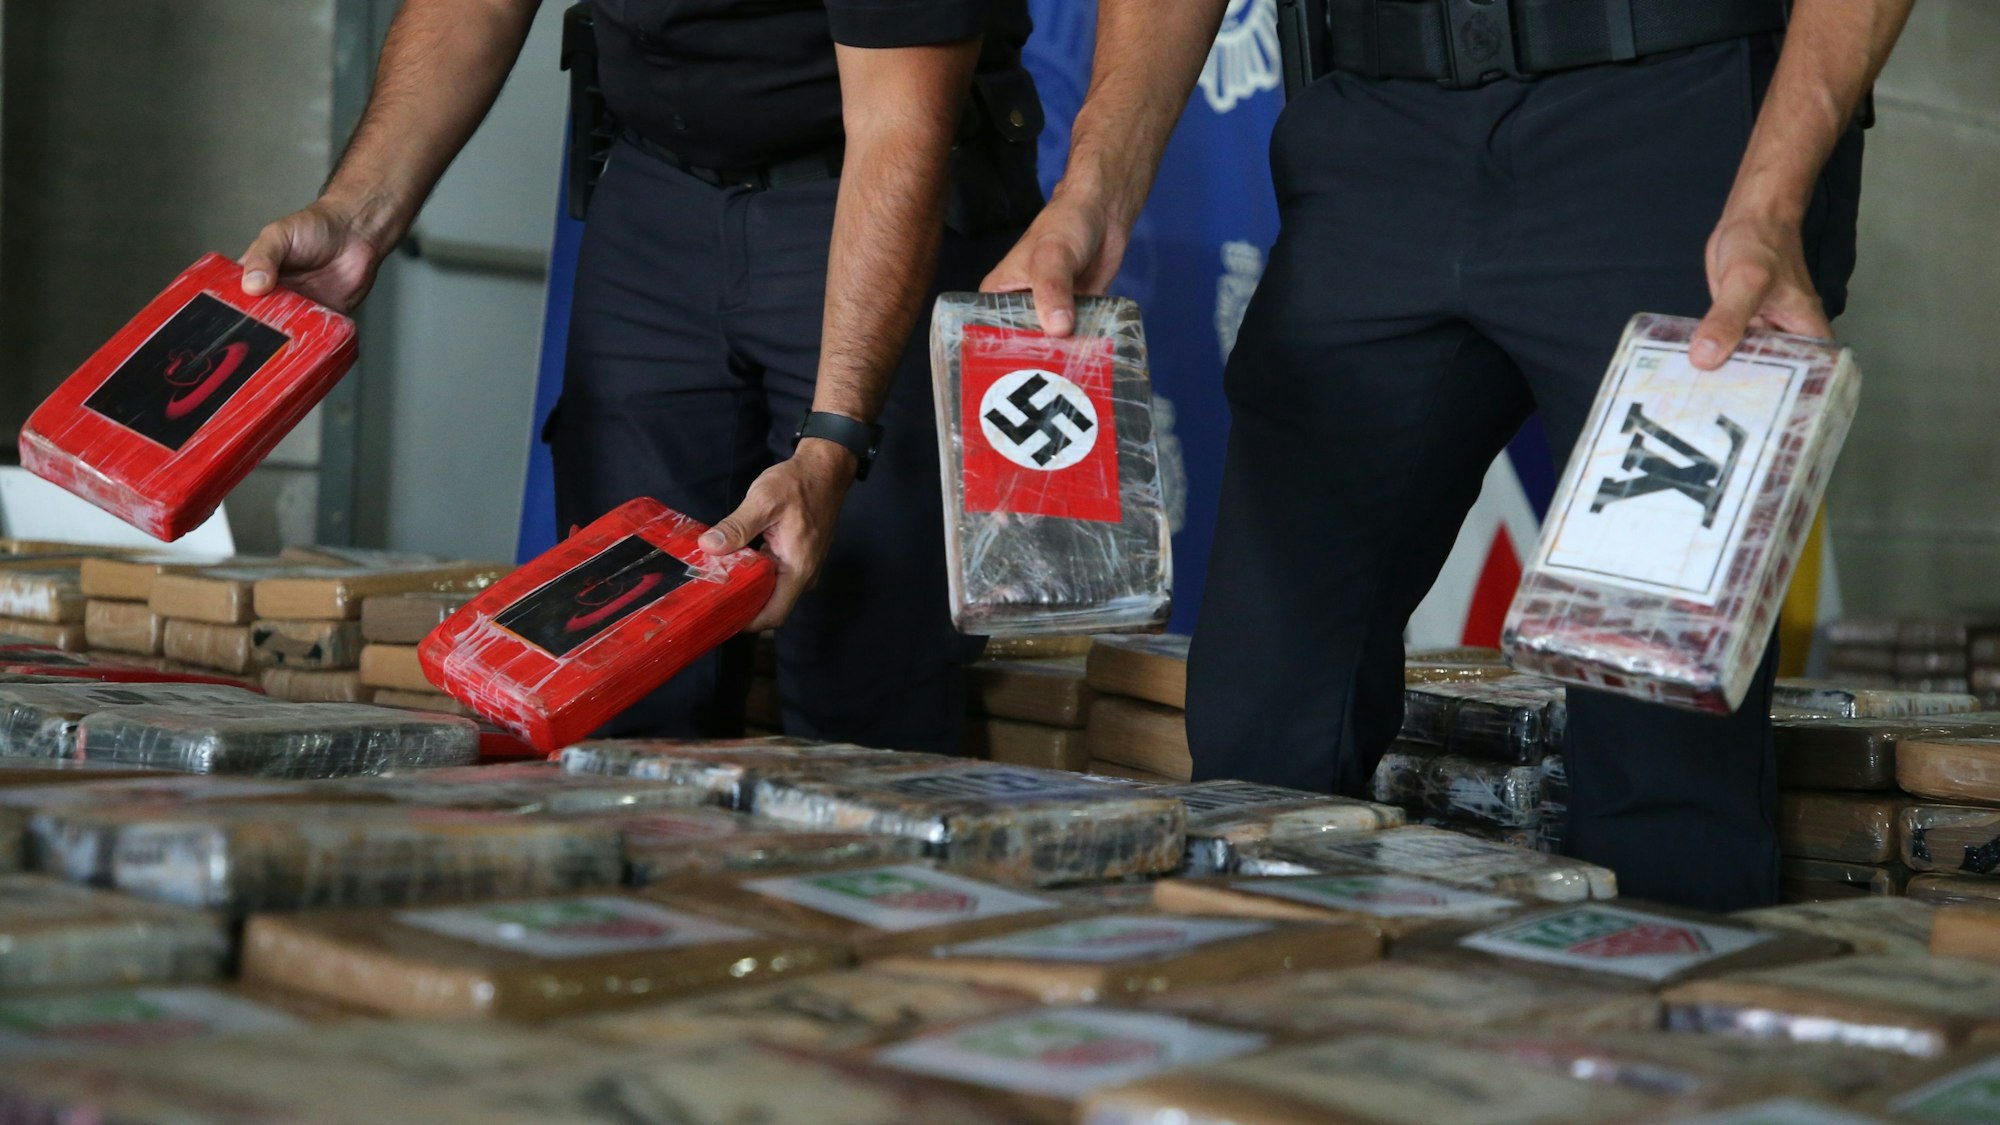 Hakenkreuze und Nazi-Symbole: Kokain-Rekordmenge beschlagnahmt